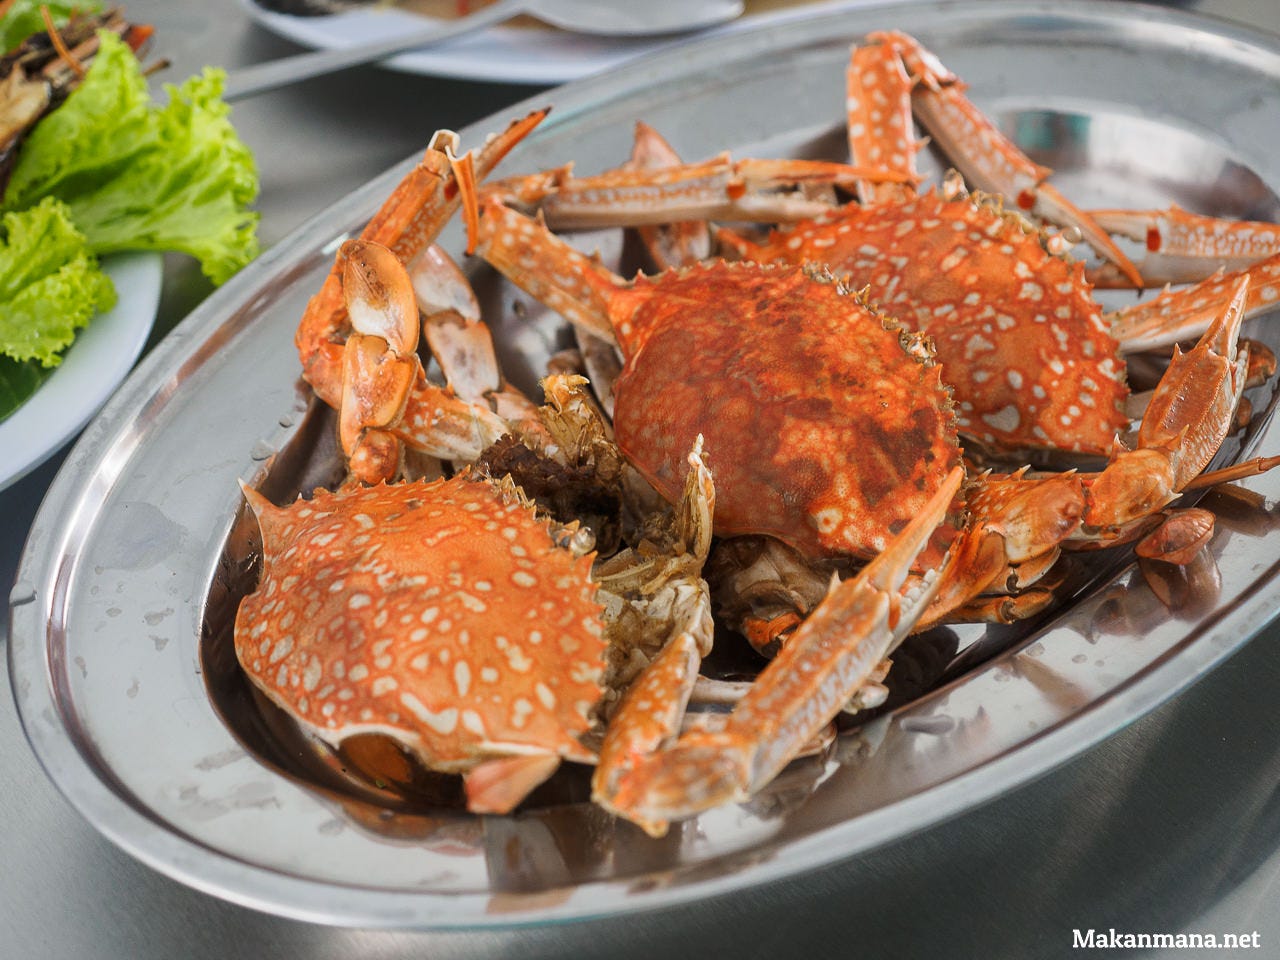 Raja Laut Seafood, Jalan Danau Singkarak – Bobby Wongso 